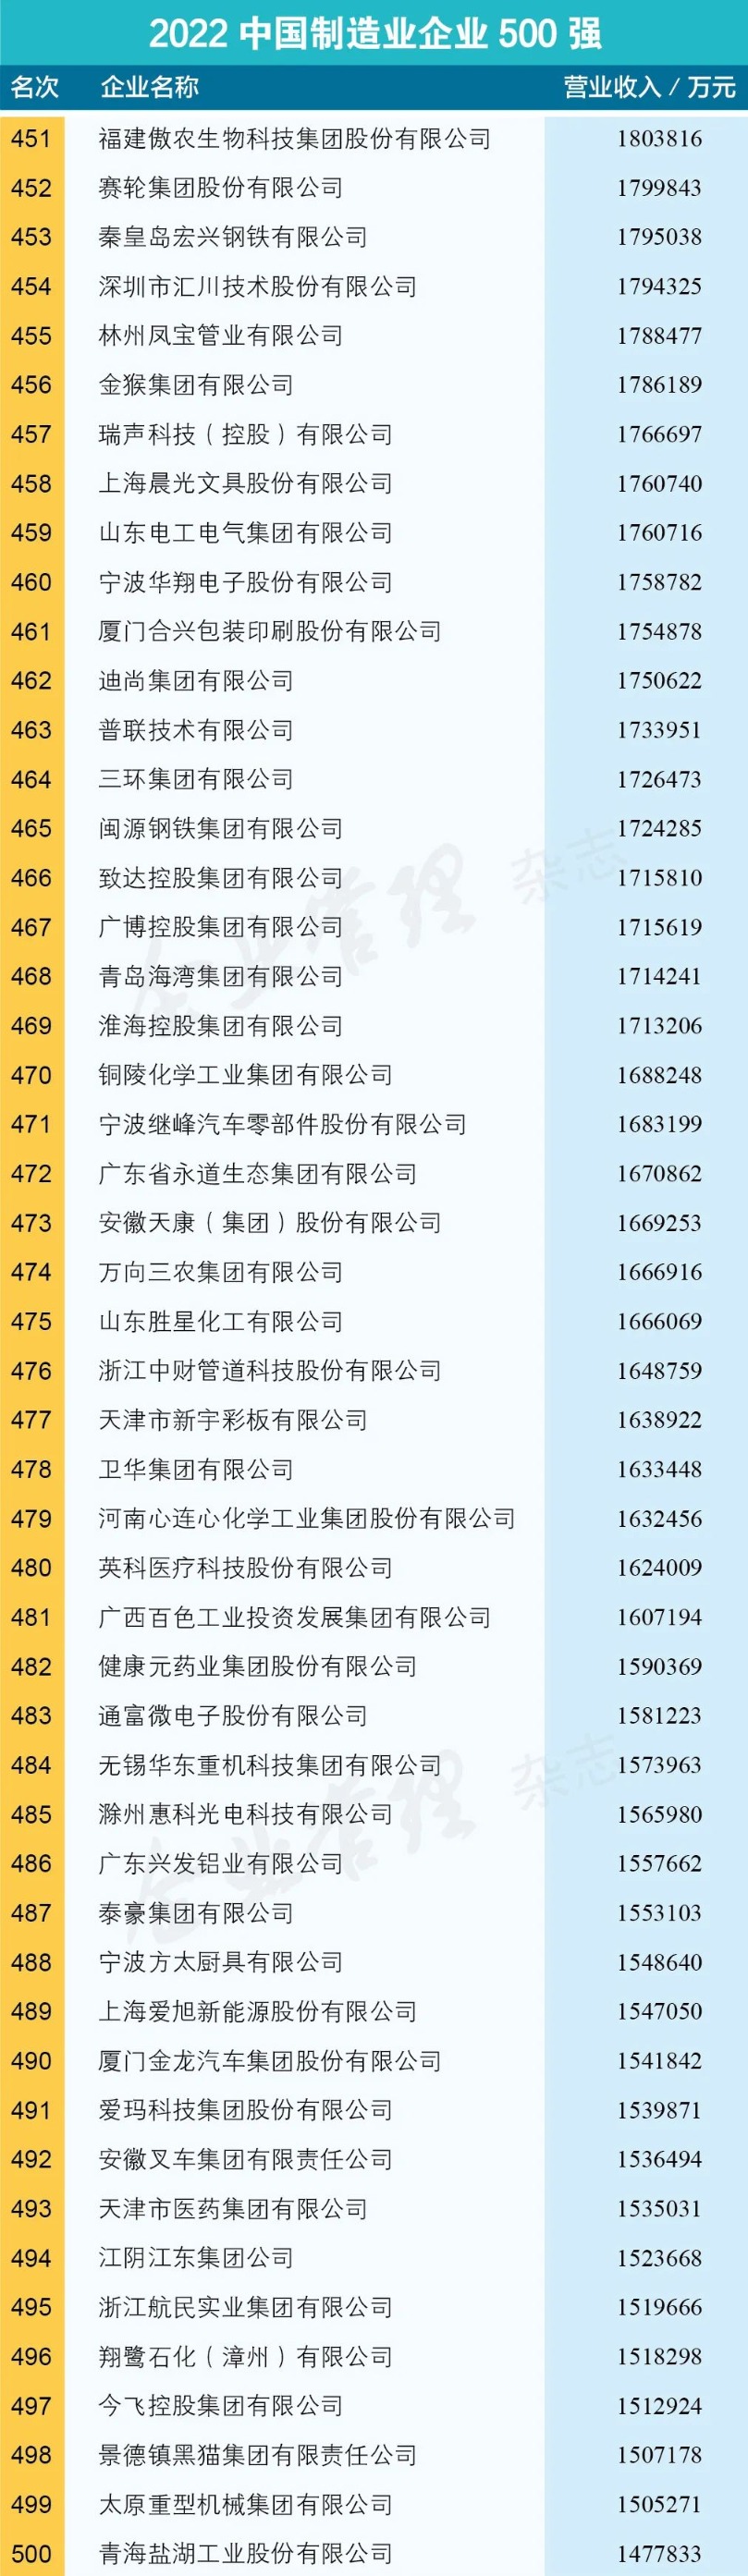 2022中国制造业500强名单